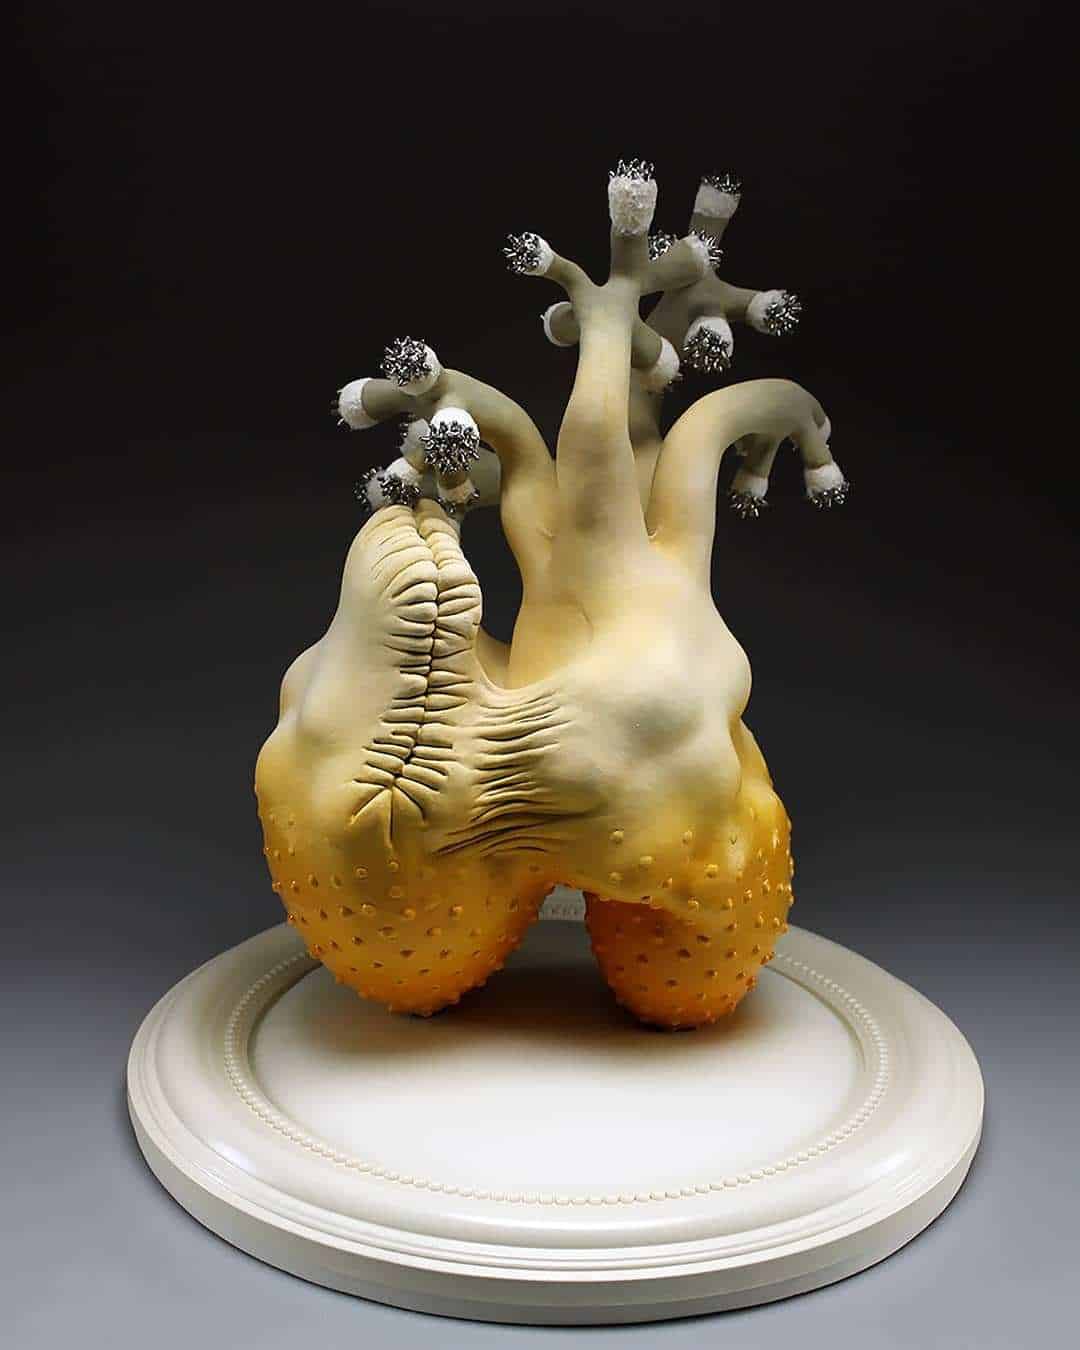 sara catapanos biomorphic ceramic sculptures 9